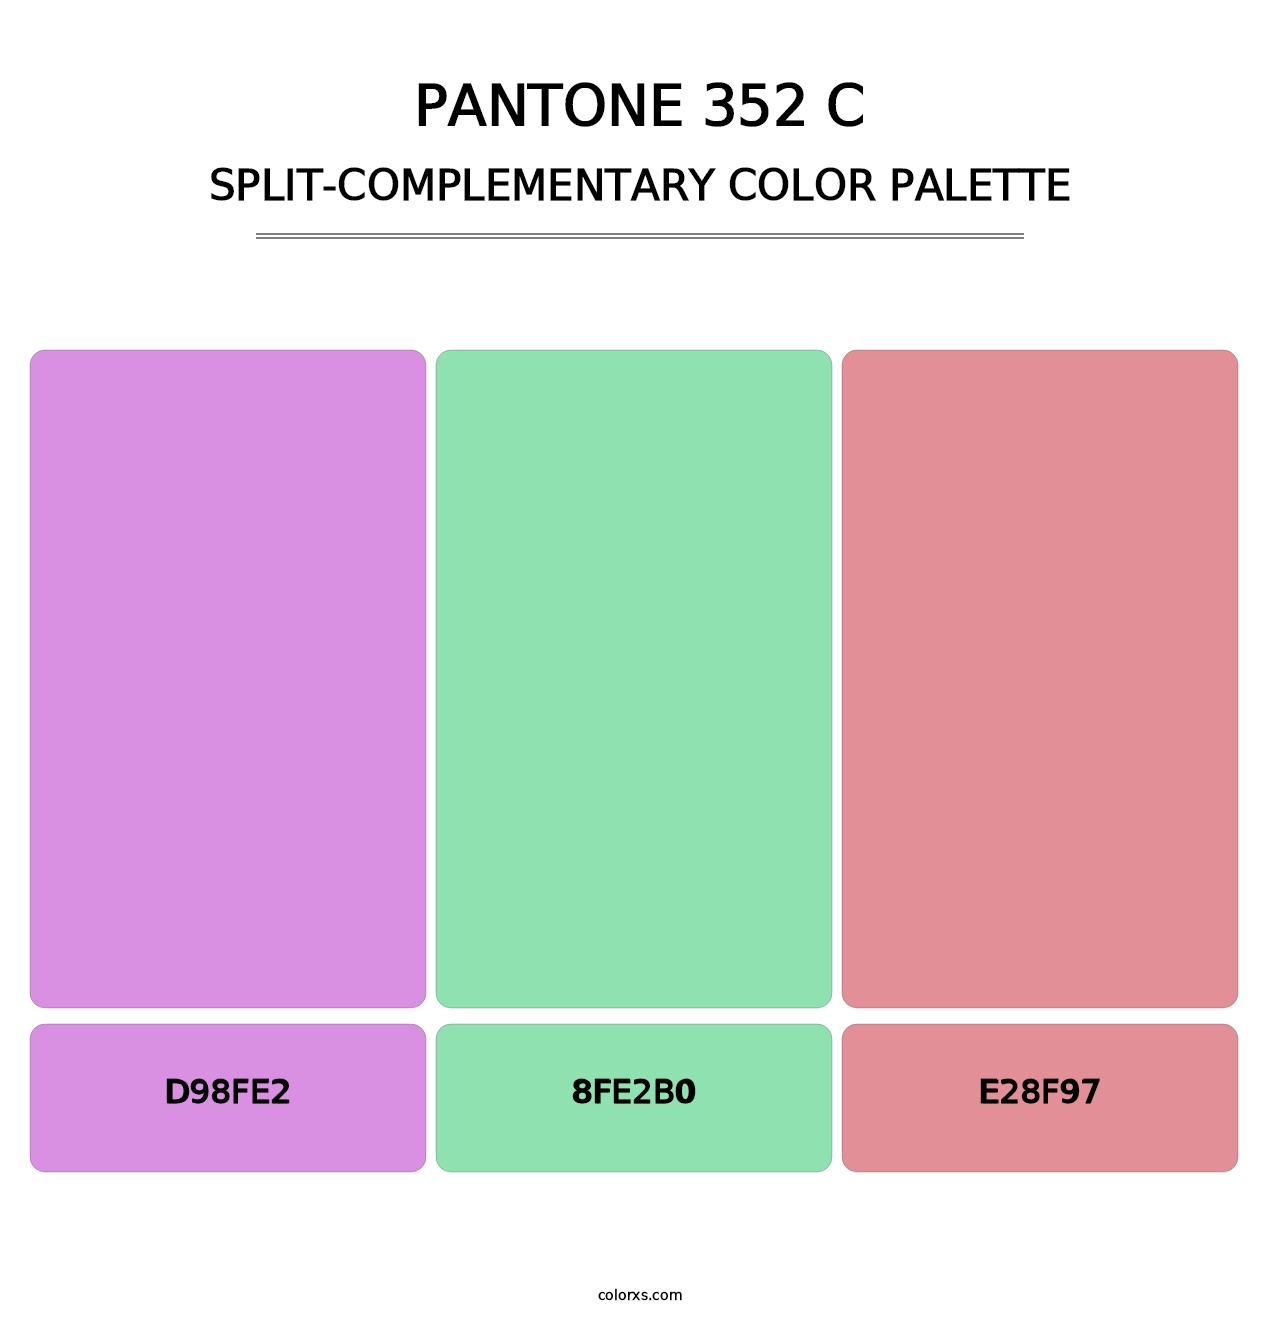 PANTONE 352 C - Split-Complementary Color Palette